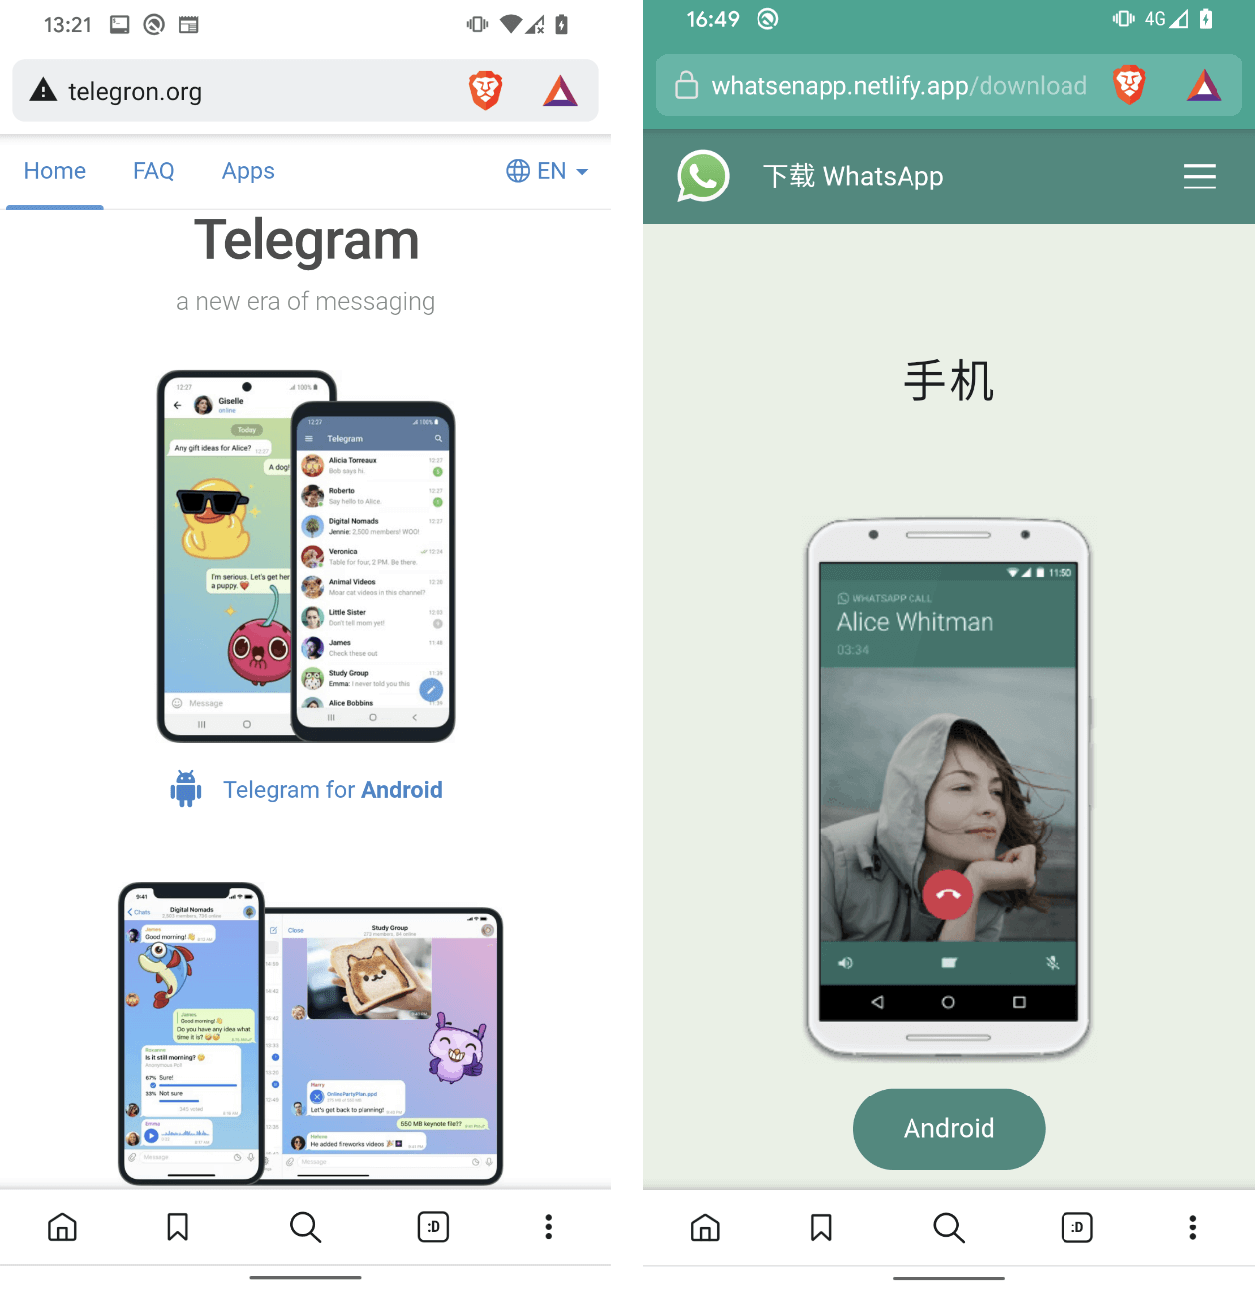 Abbildung 1. Websites, die Telegram und WhatsApp nachahmen